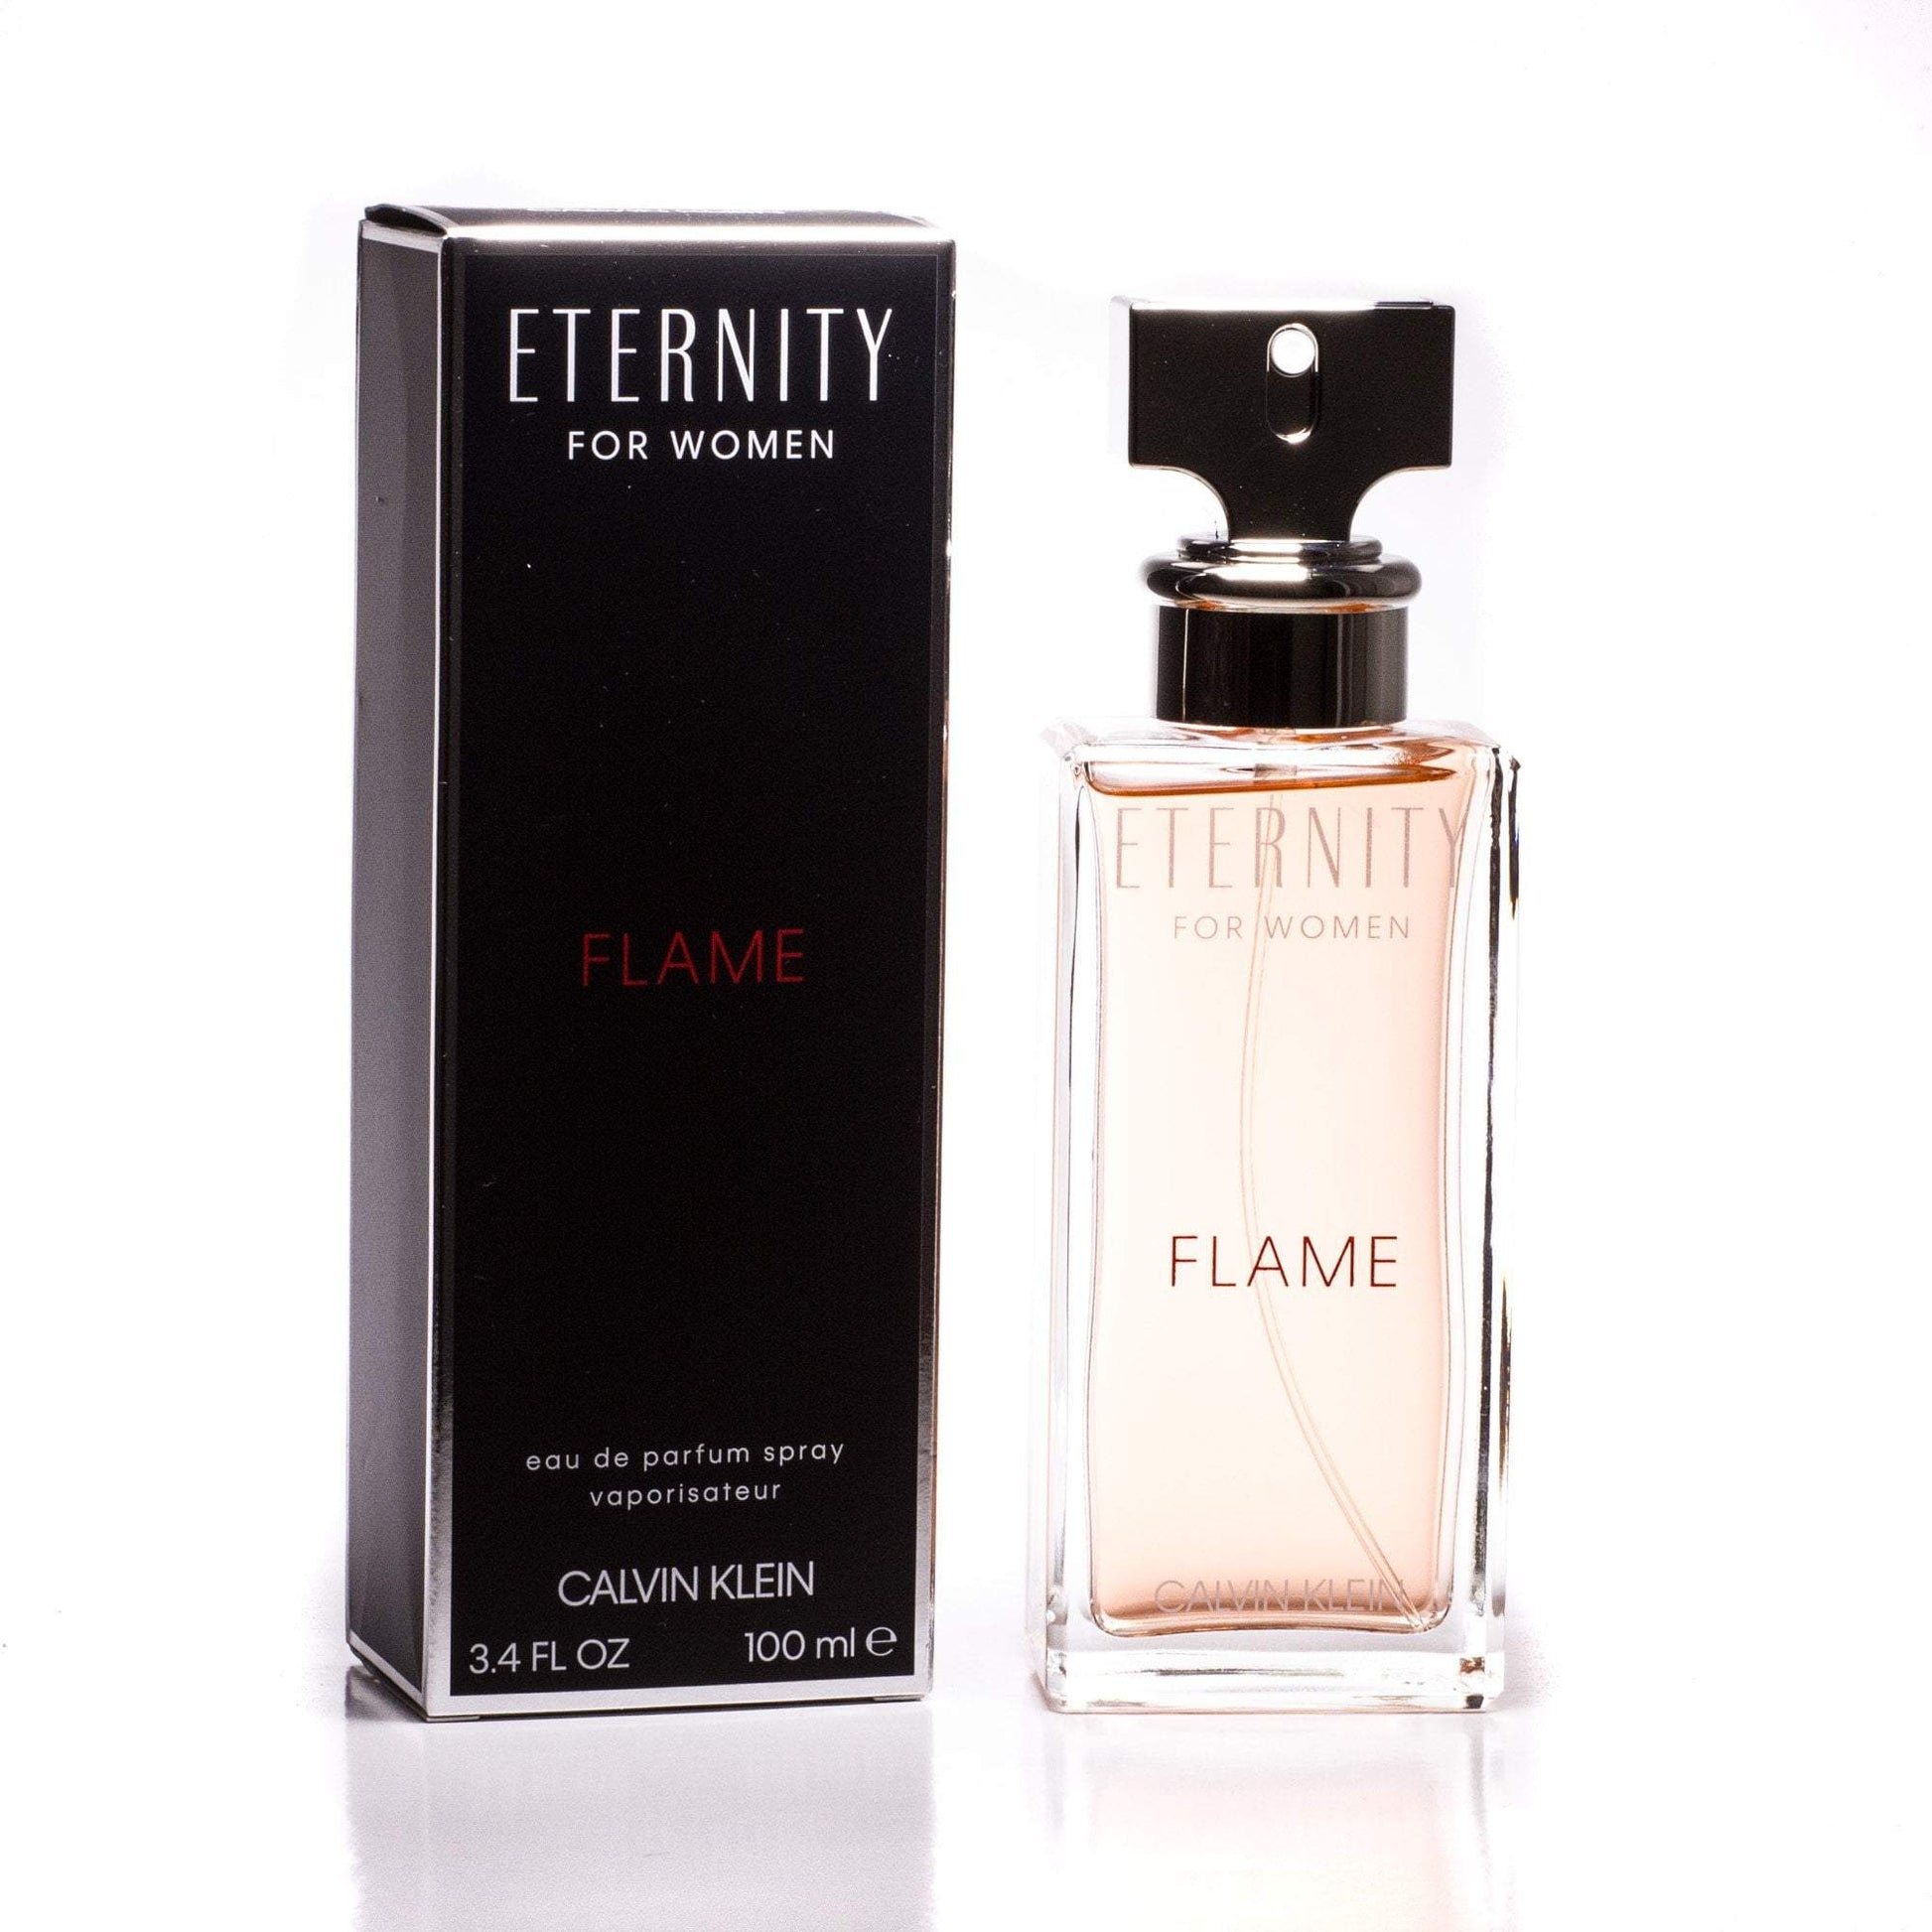 Eternity Flame Eau de Parfum Spray for Women by Calvin Klein 1.7 oz. Click to open in modal